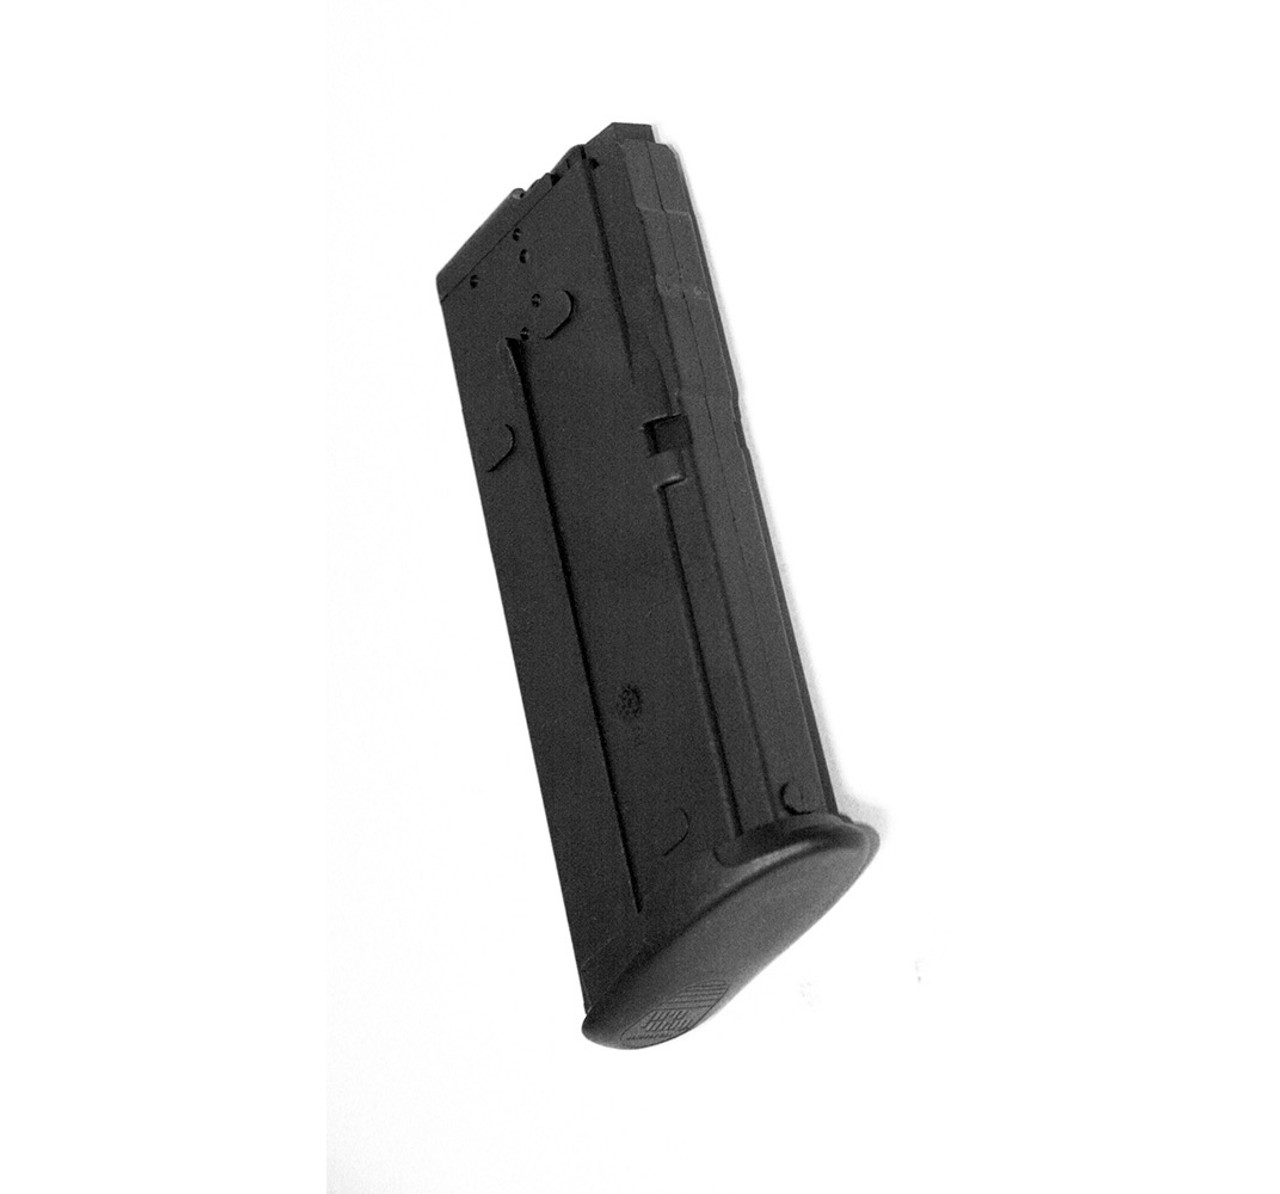 FN® Five-seveN® IOM & USG 5.7x28mm (20) Rd - Black Polymer